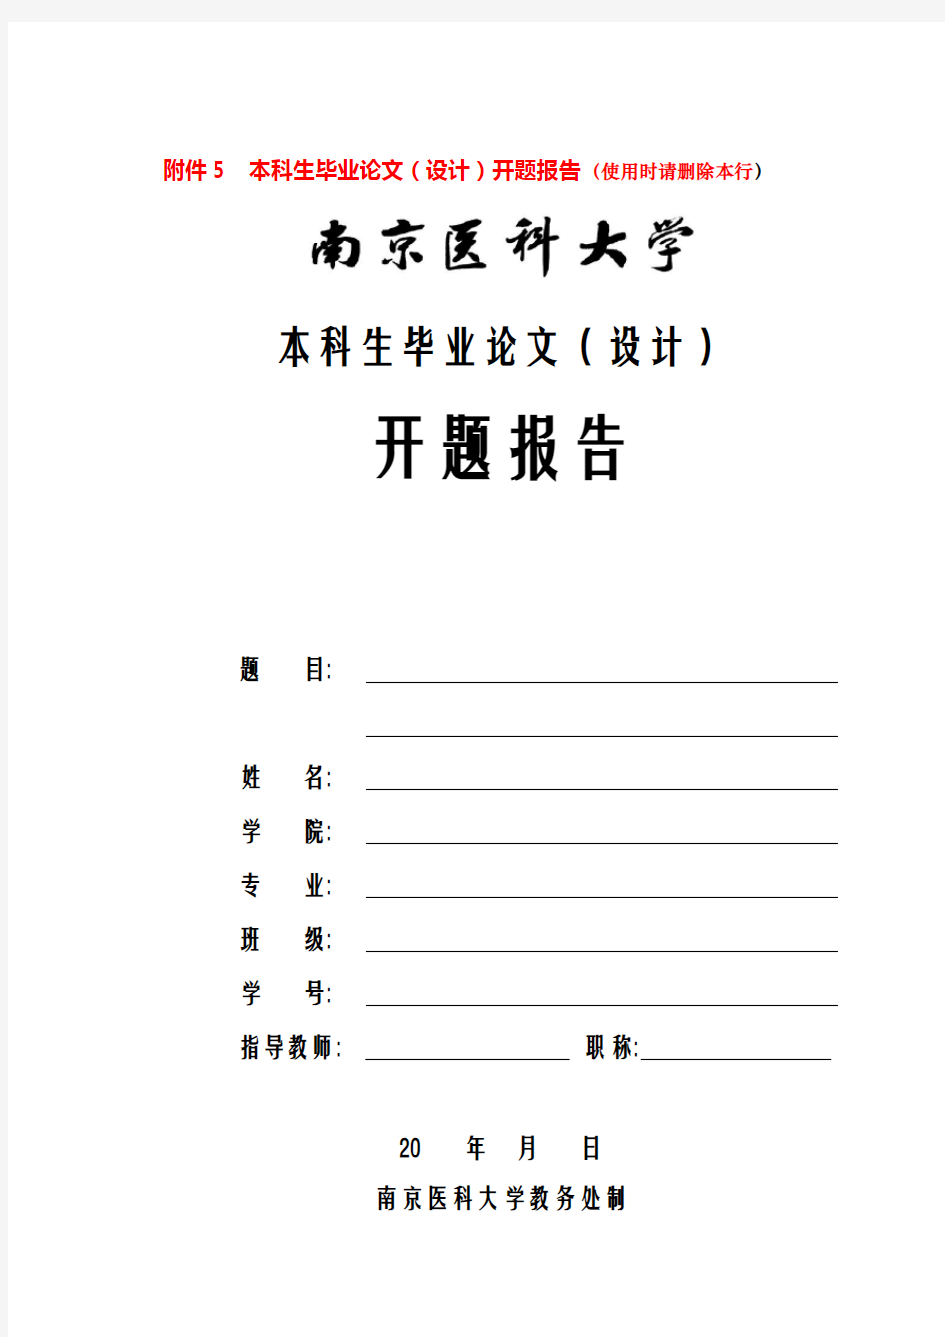 南京医科大学本科生毕业论文(设计)开题报告格式